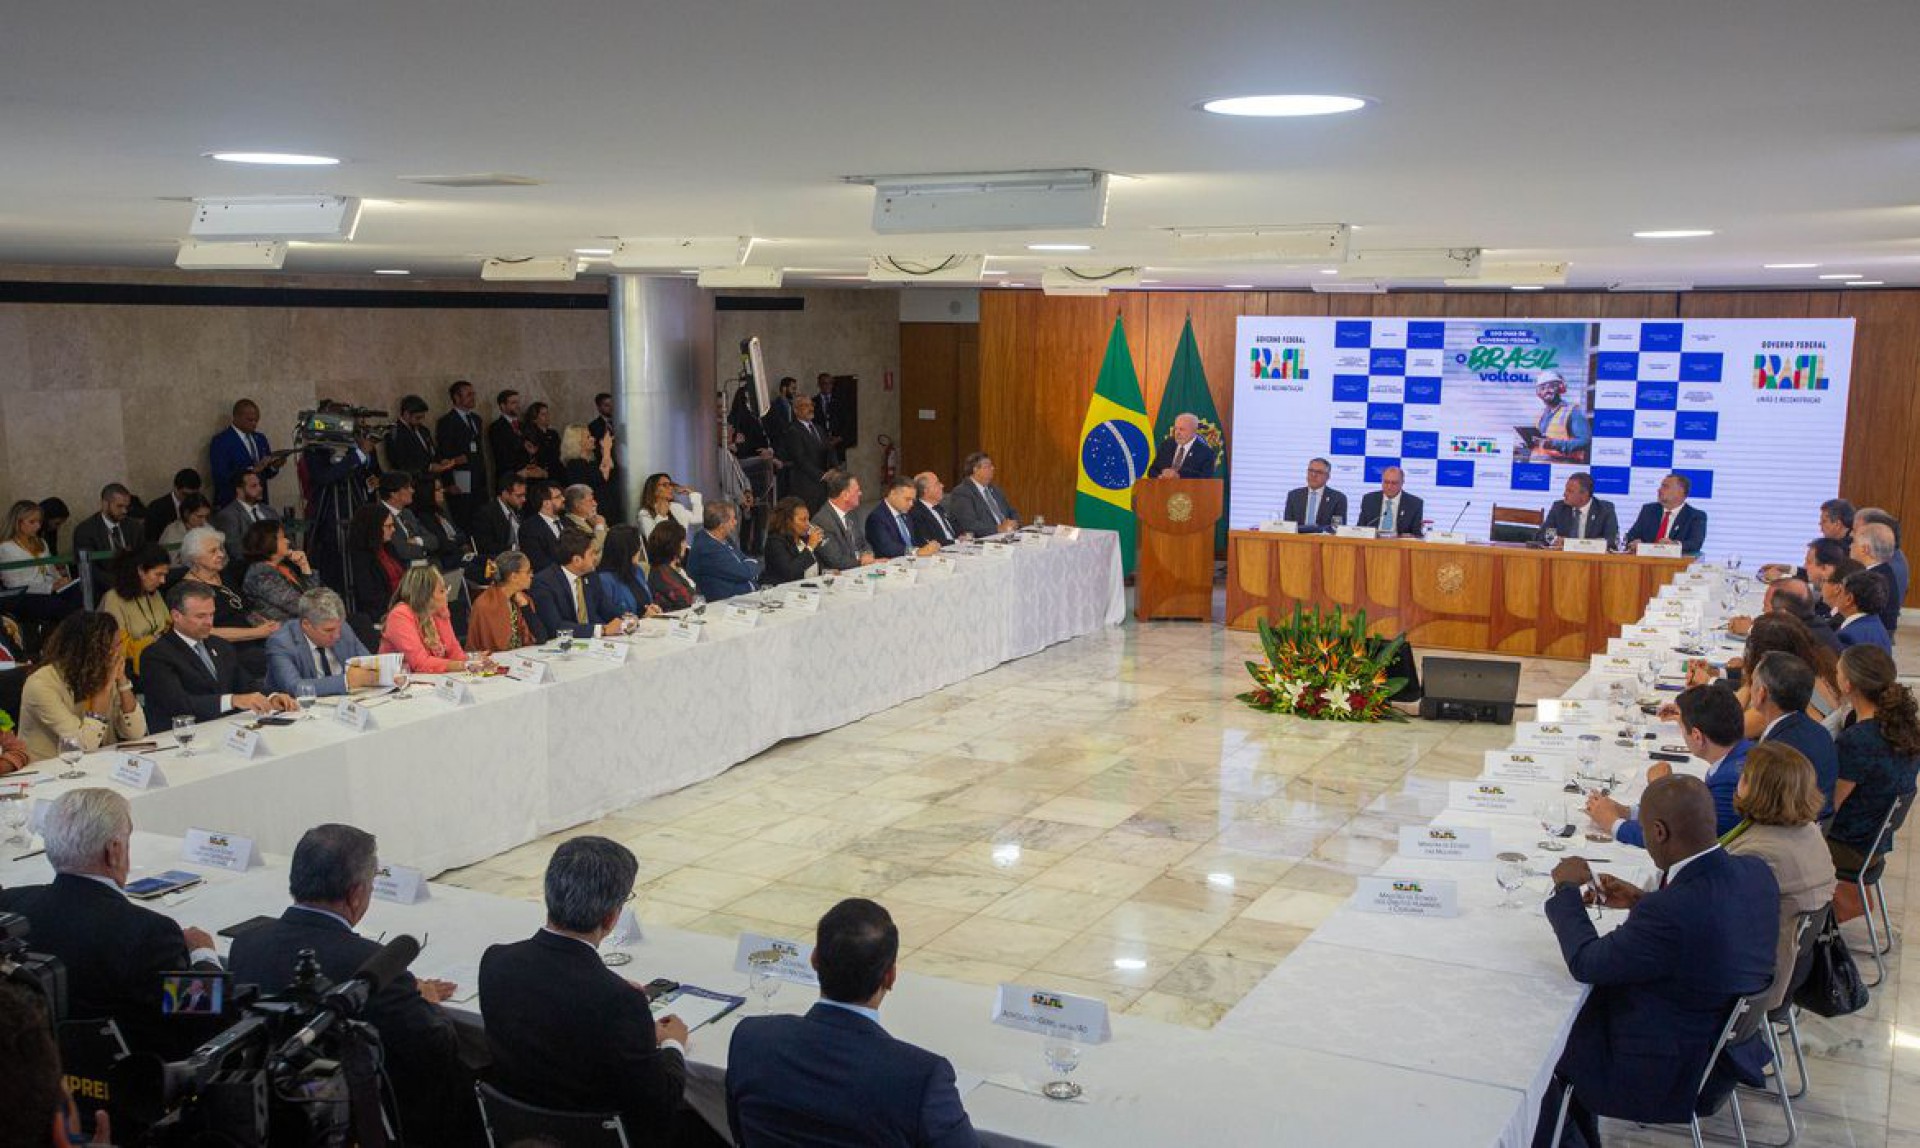 Presidente Luiz Inácio Lula da Silva coordena reunião de balanço dos 100 dias de governo. Todos os ministros participam do encontro